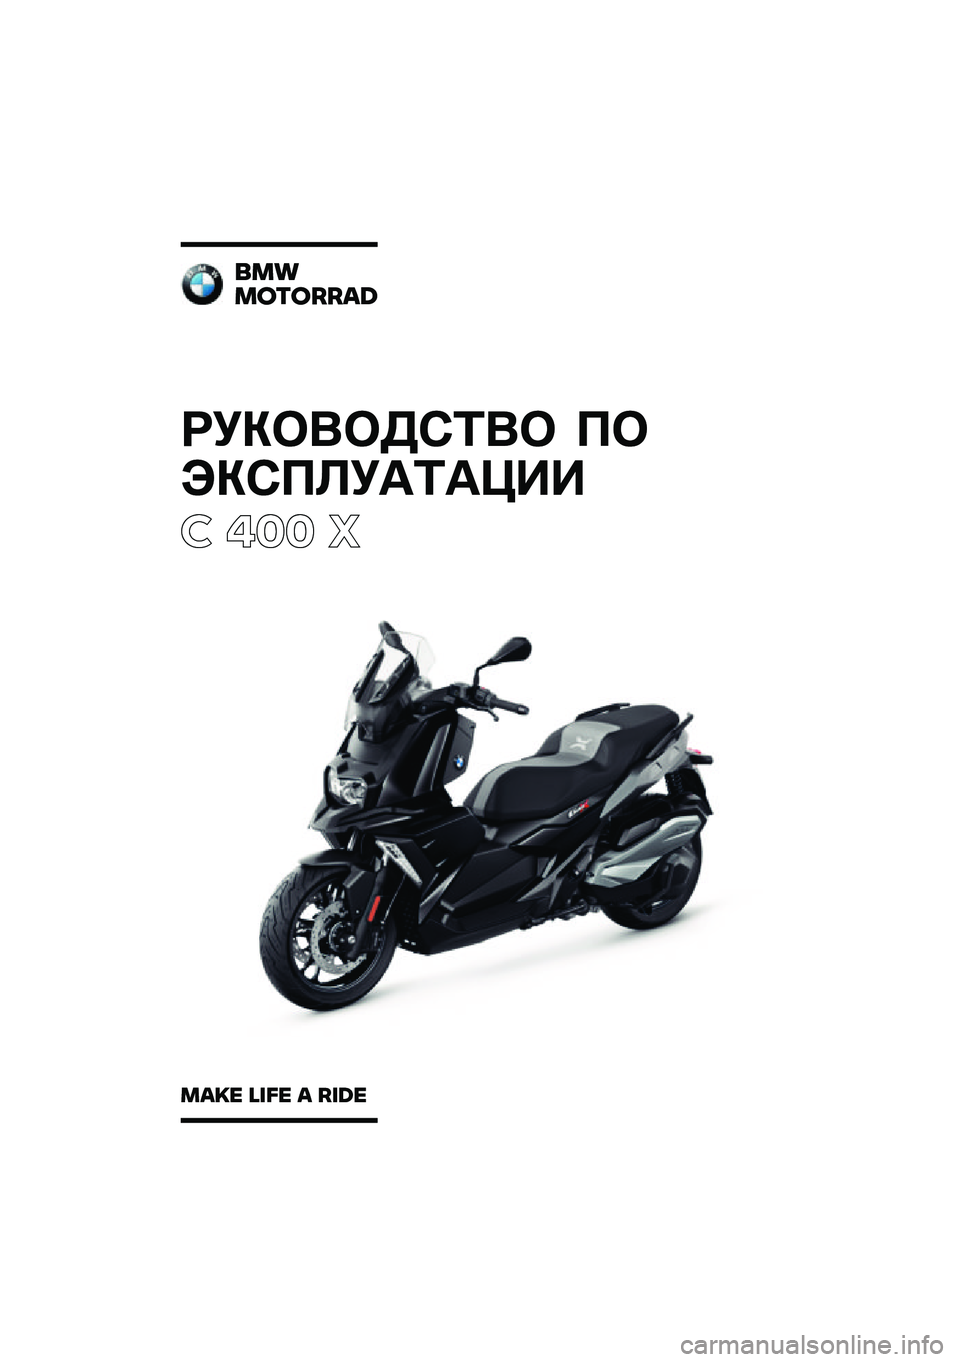 BMW MOTORRAD C 400 X 2020  Руководство по эксплуатации (in Russian) ��������\b�	�� �
�
���\b�
�\f��
�	�
���
� ��� �
���
�������\b�	
��\b�
� �\f�
�� �\b ��
�	� 